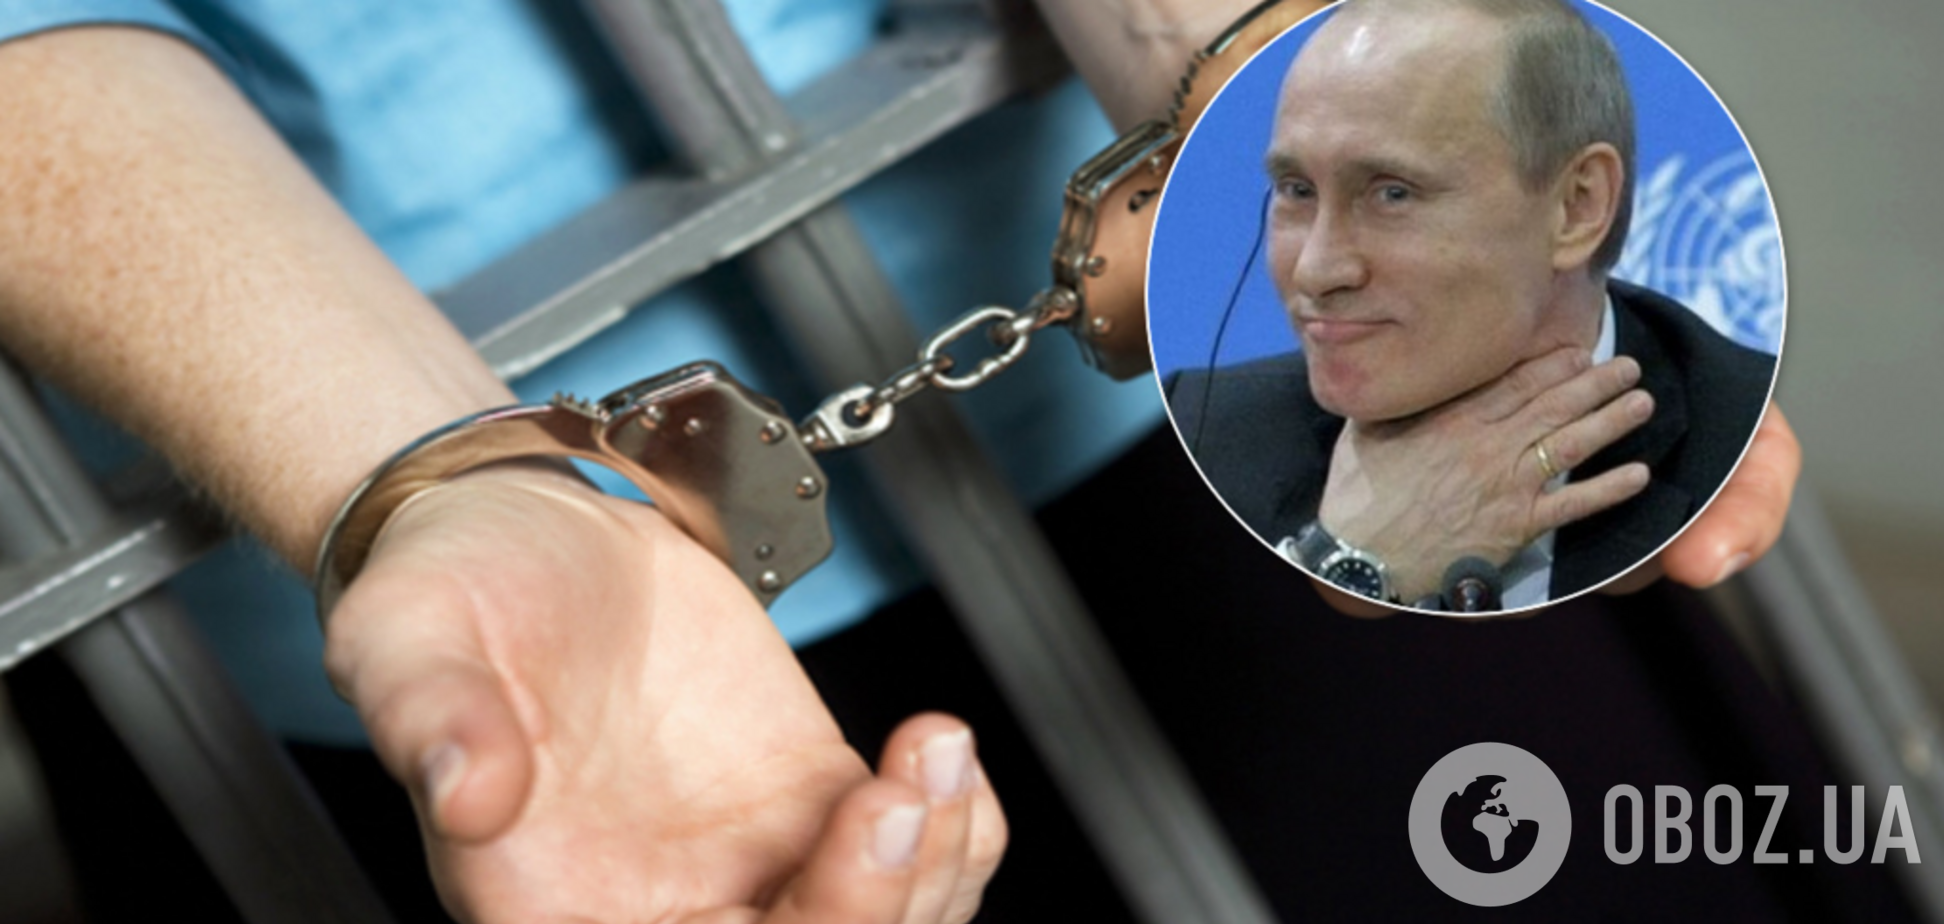 В России арестовали противника Путина Навального